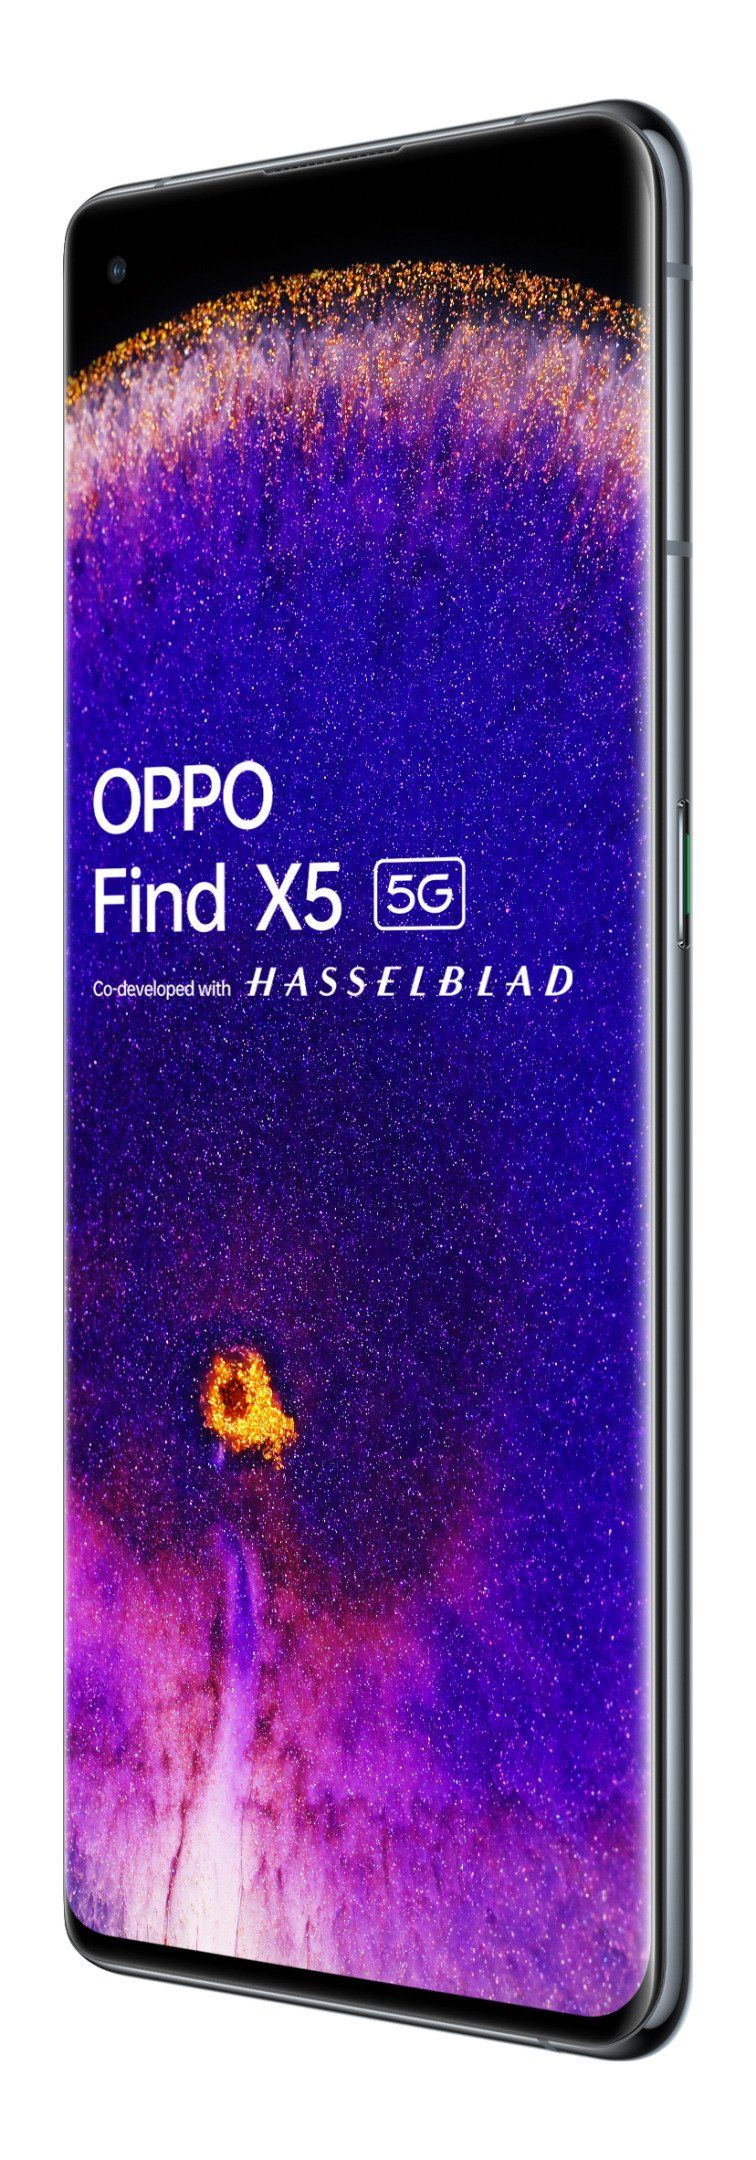 หลุดภาพเรนเดอร์ OPPO Find X5 พร้อมข้อมูลสเปคชุดใหญ่